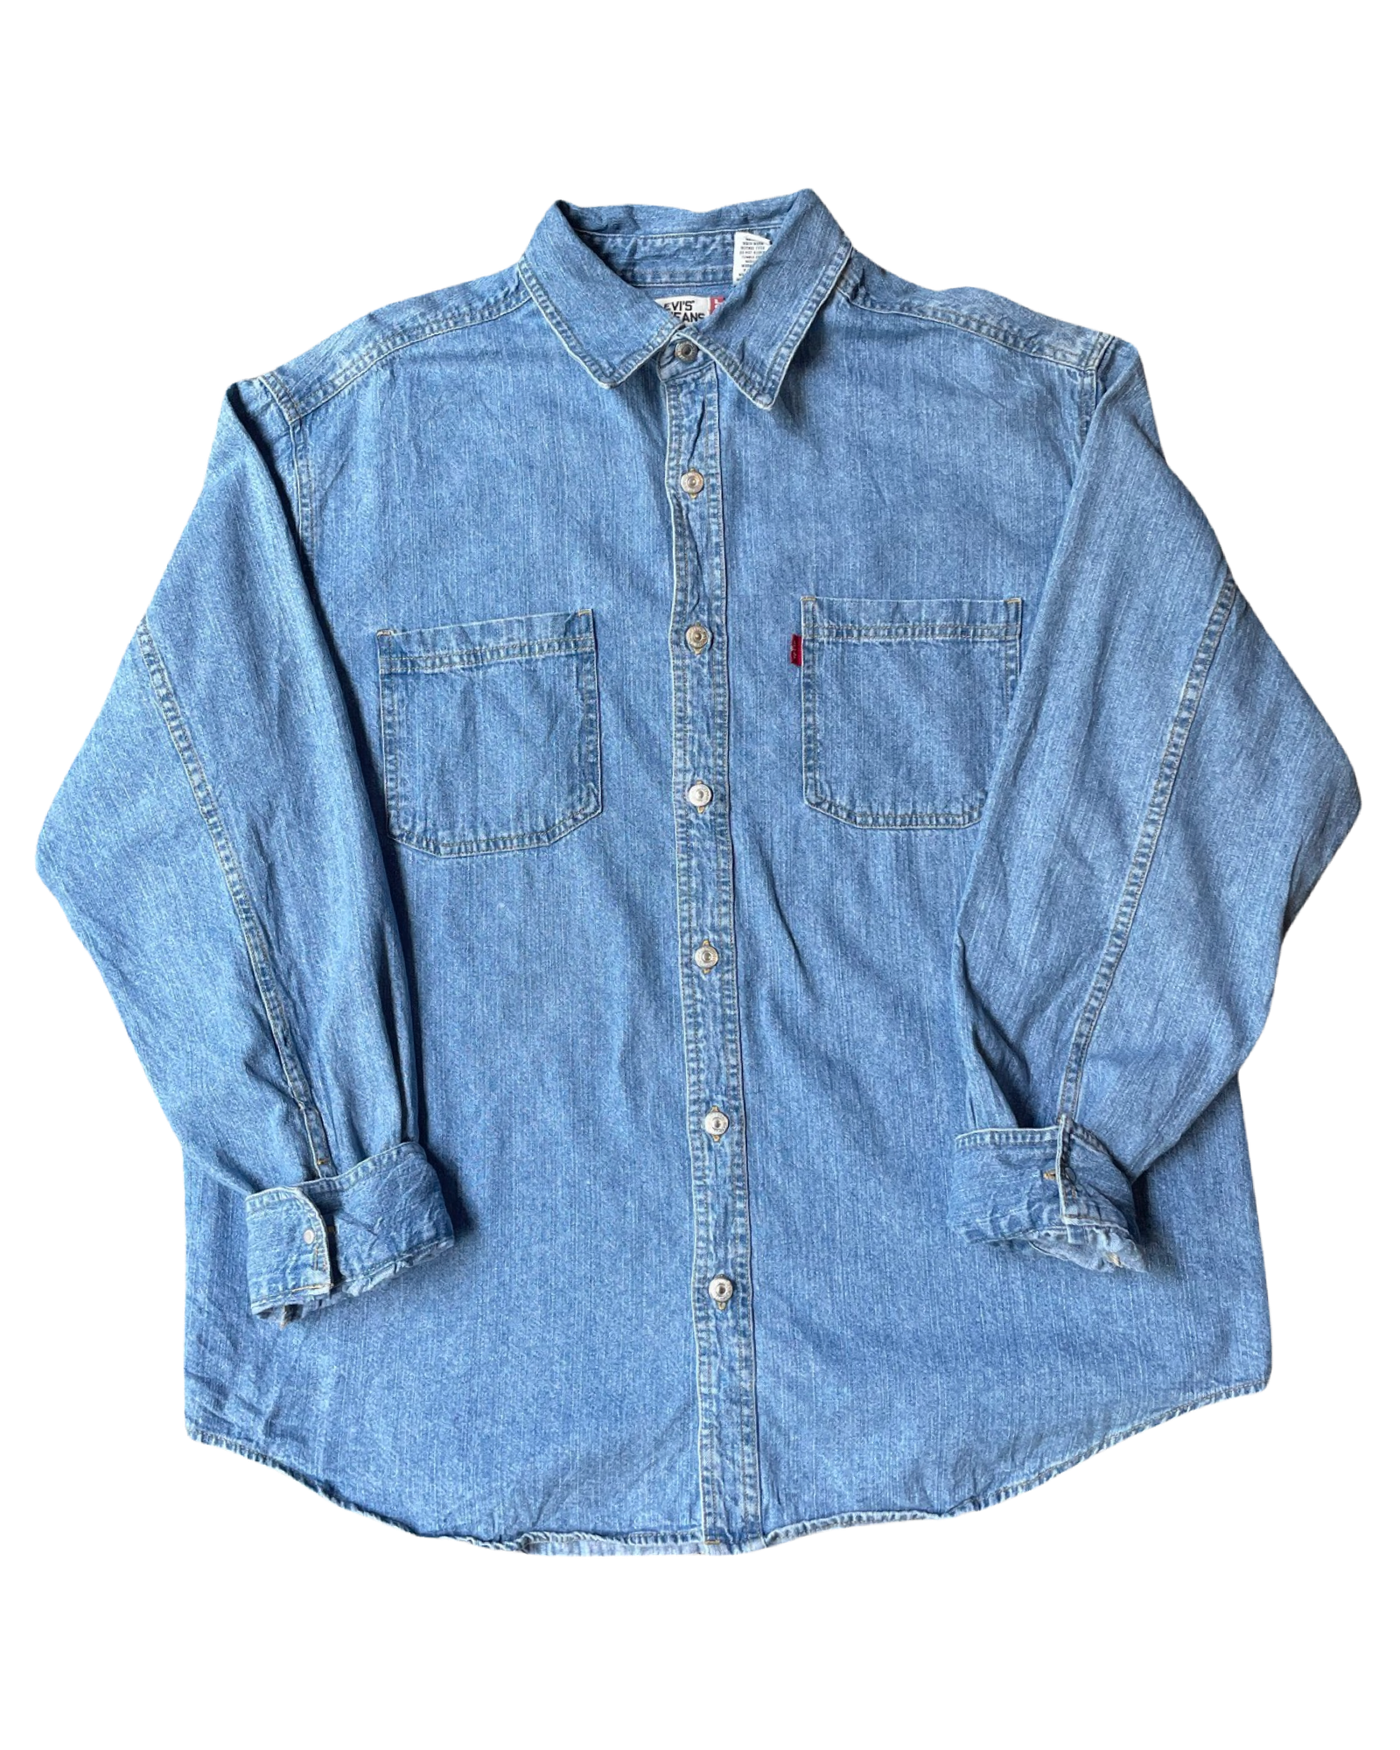 Vintage Levi Denim Shirt Size L